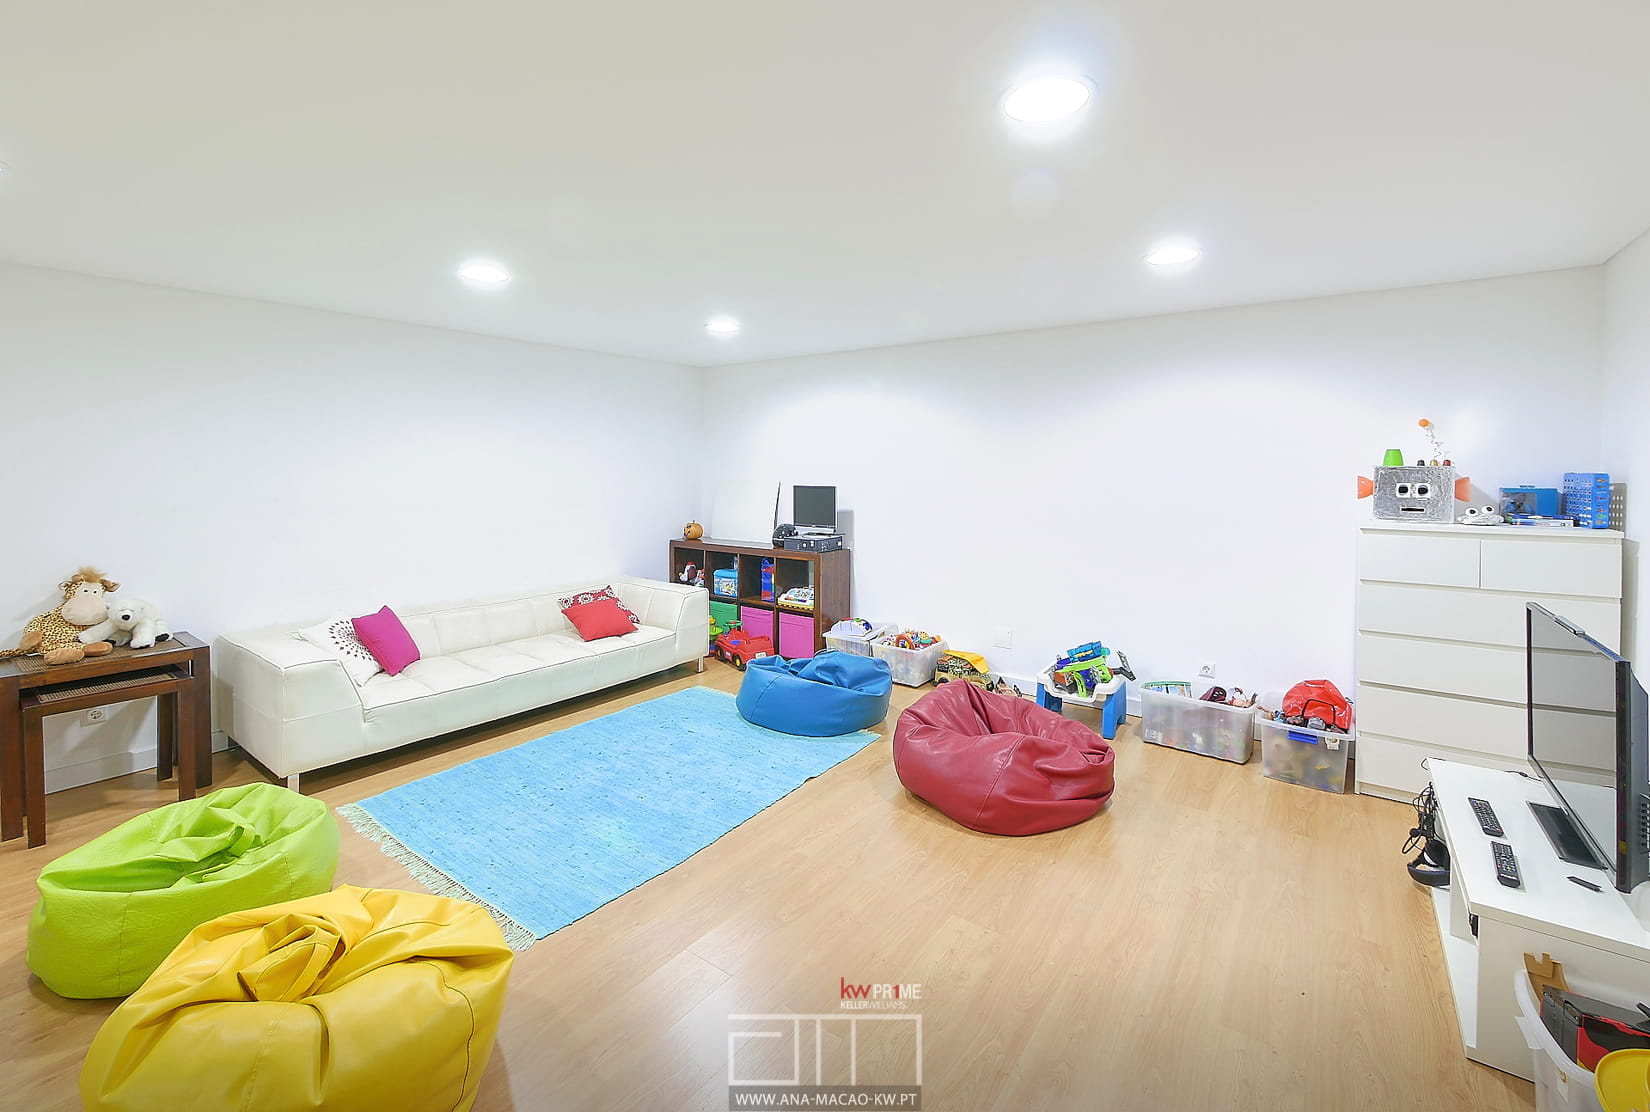 Salão para crianças situado no piso -1